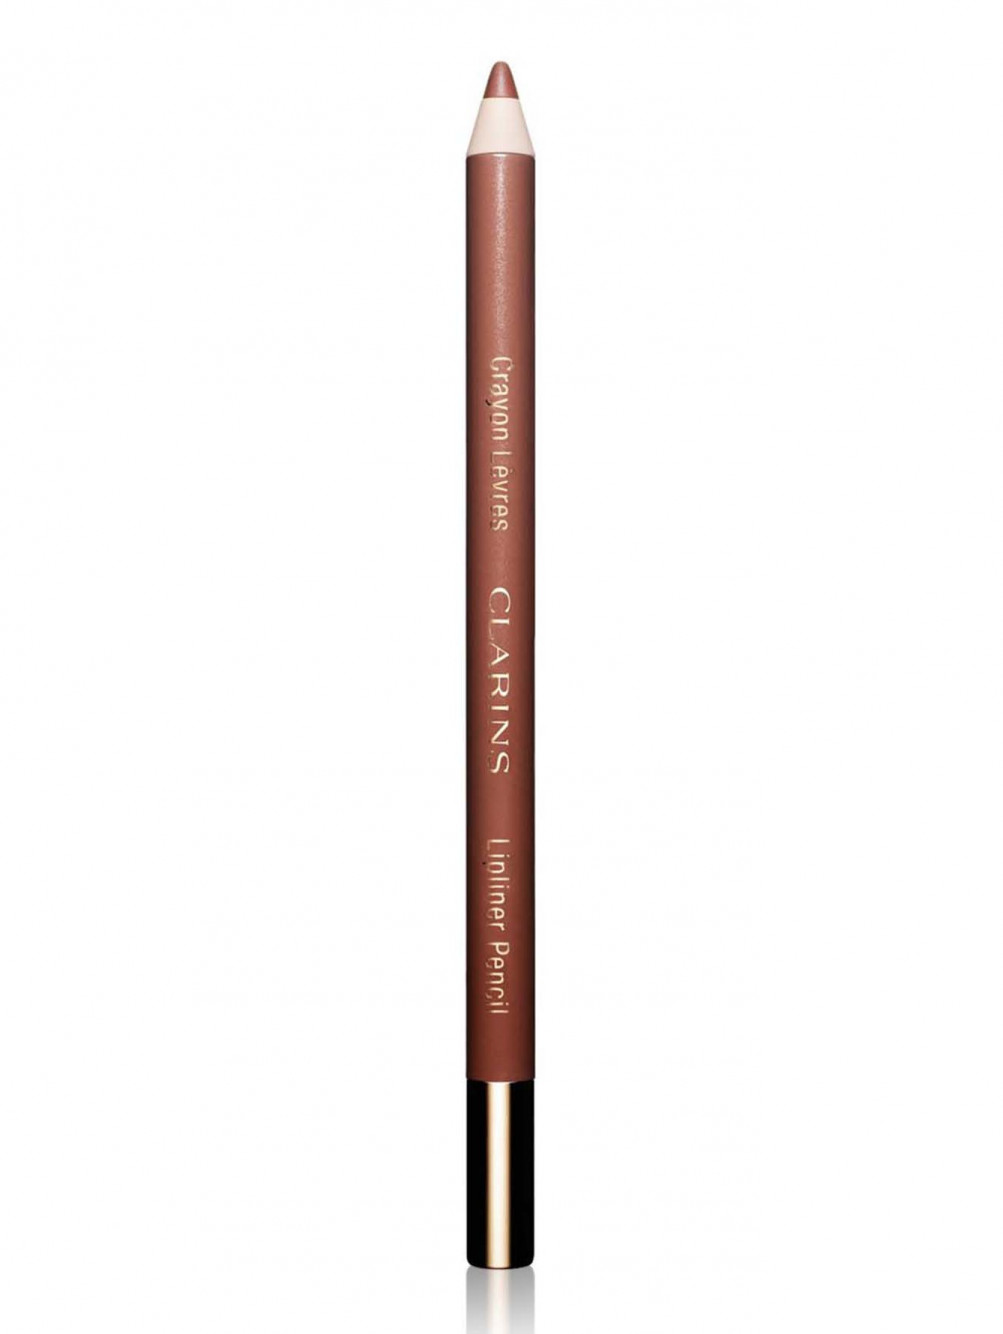  Карандаш для губ - №02 Nude beige, Crayon Levres - Общий вид